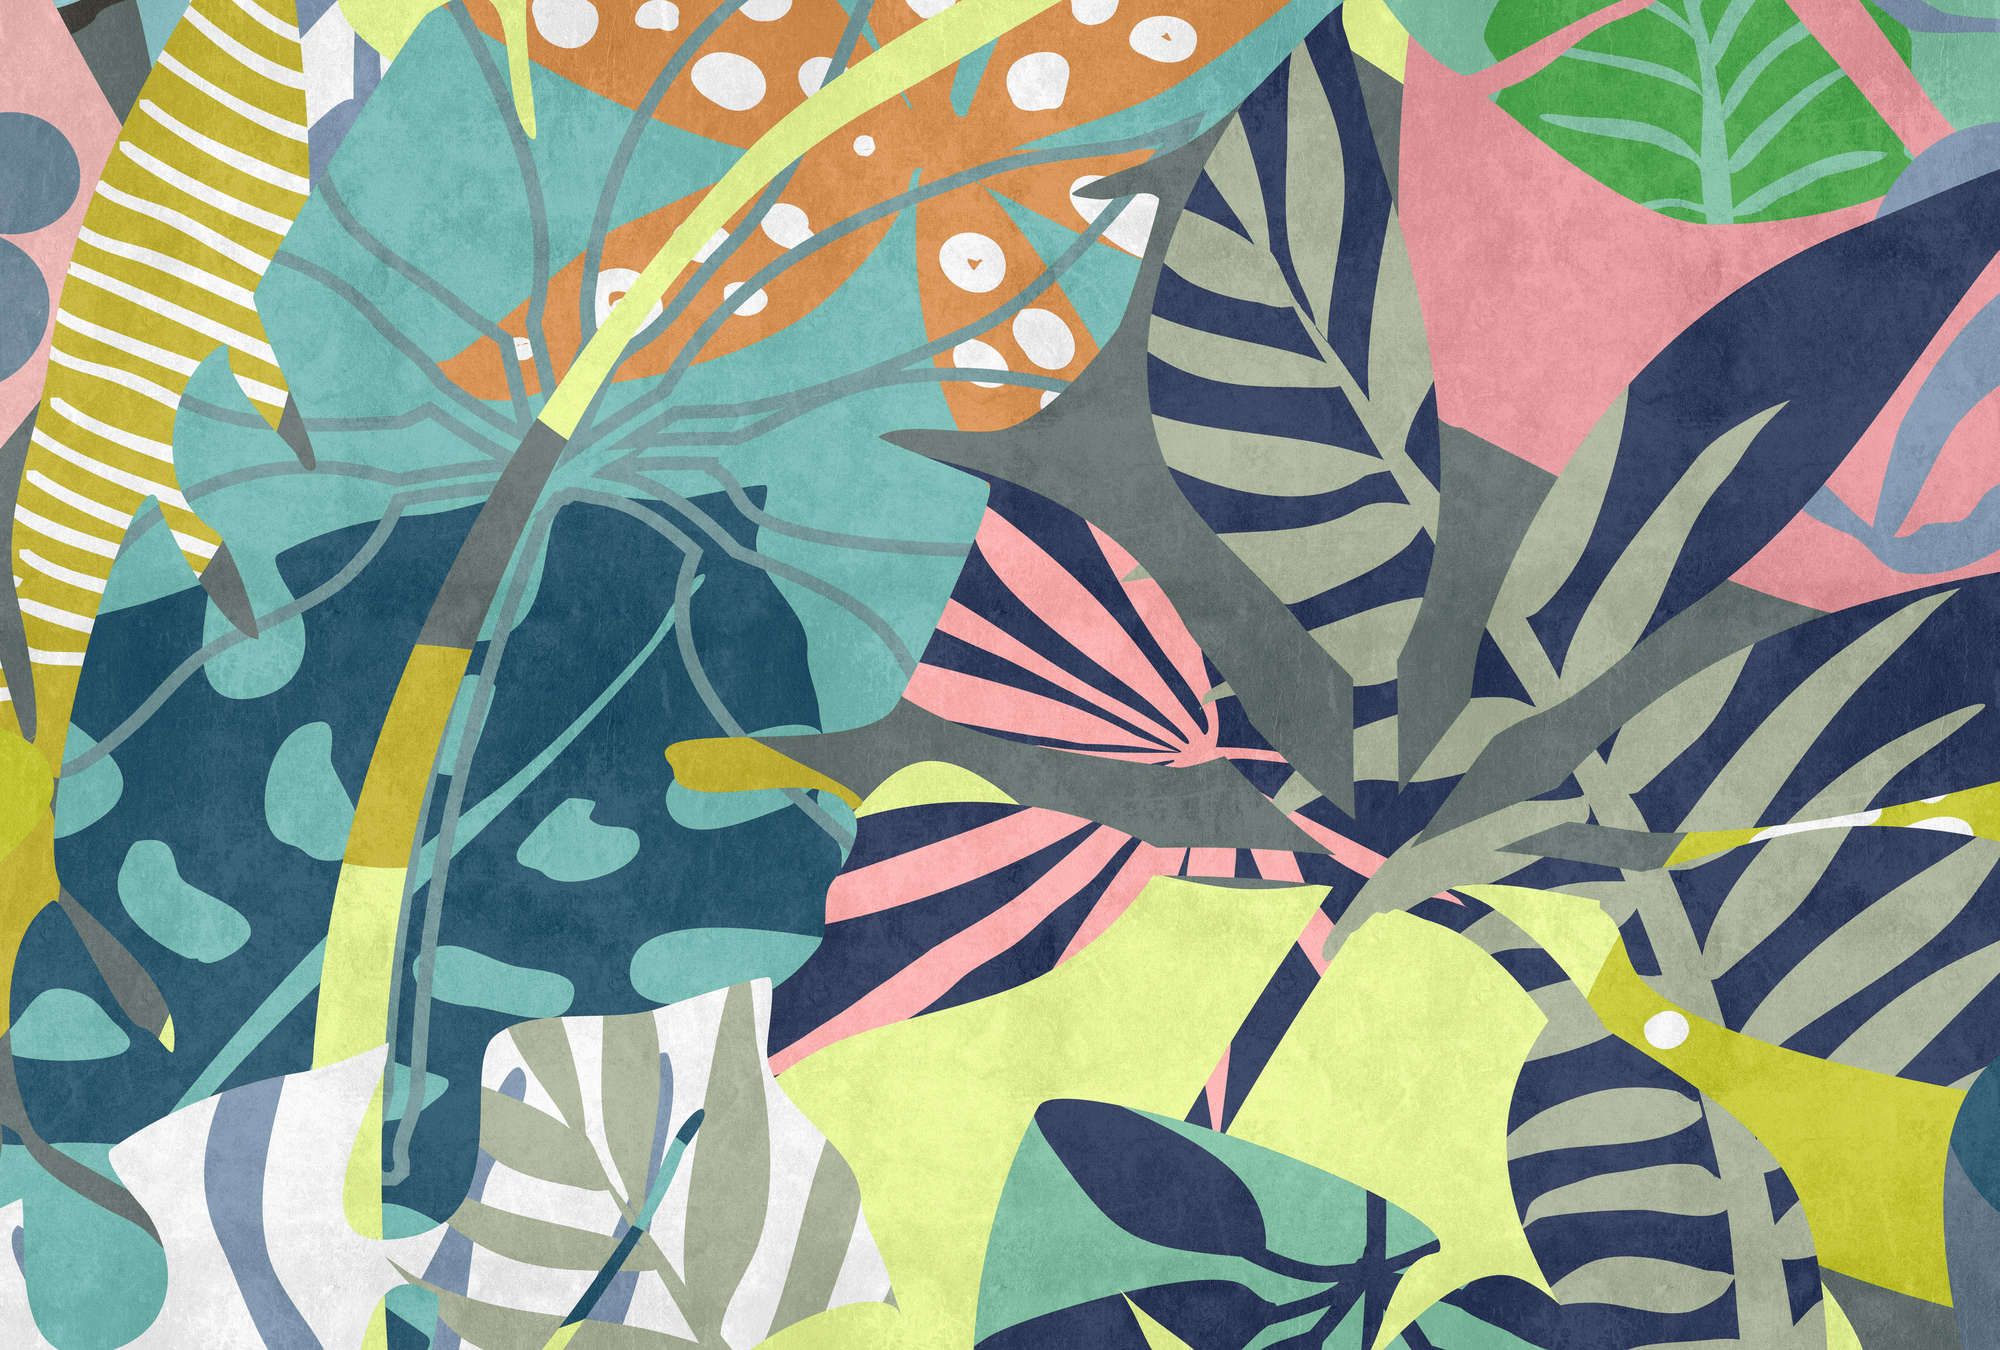             Fotomural »anais 1« - Hojas abstractas de la selva sobre textura de yeso de hormigón - Coloreado | Material no tejido liso, ligeramente nacarado y brillante
        